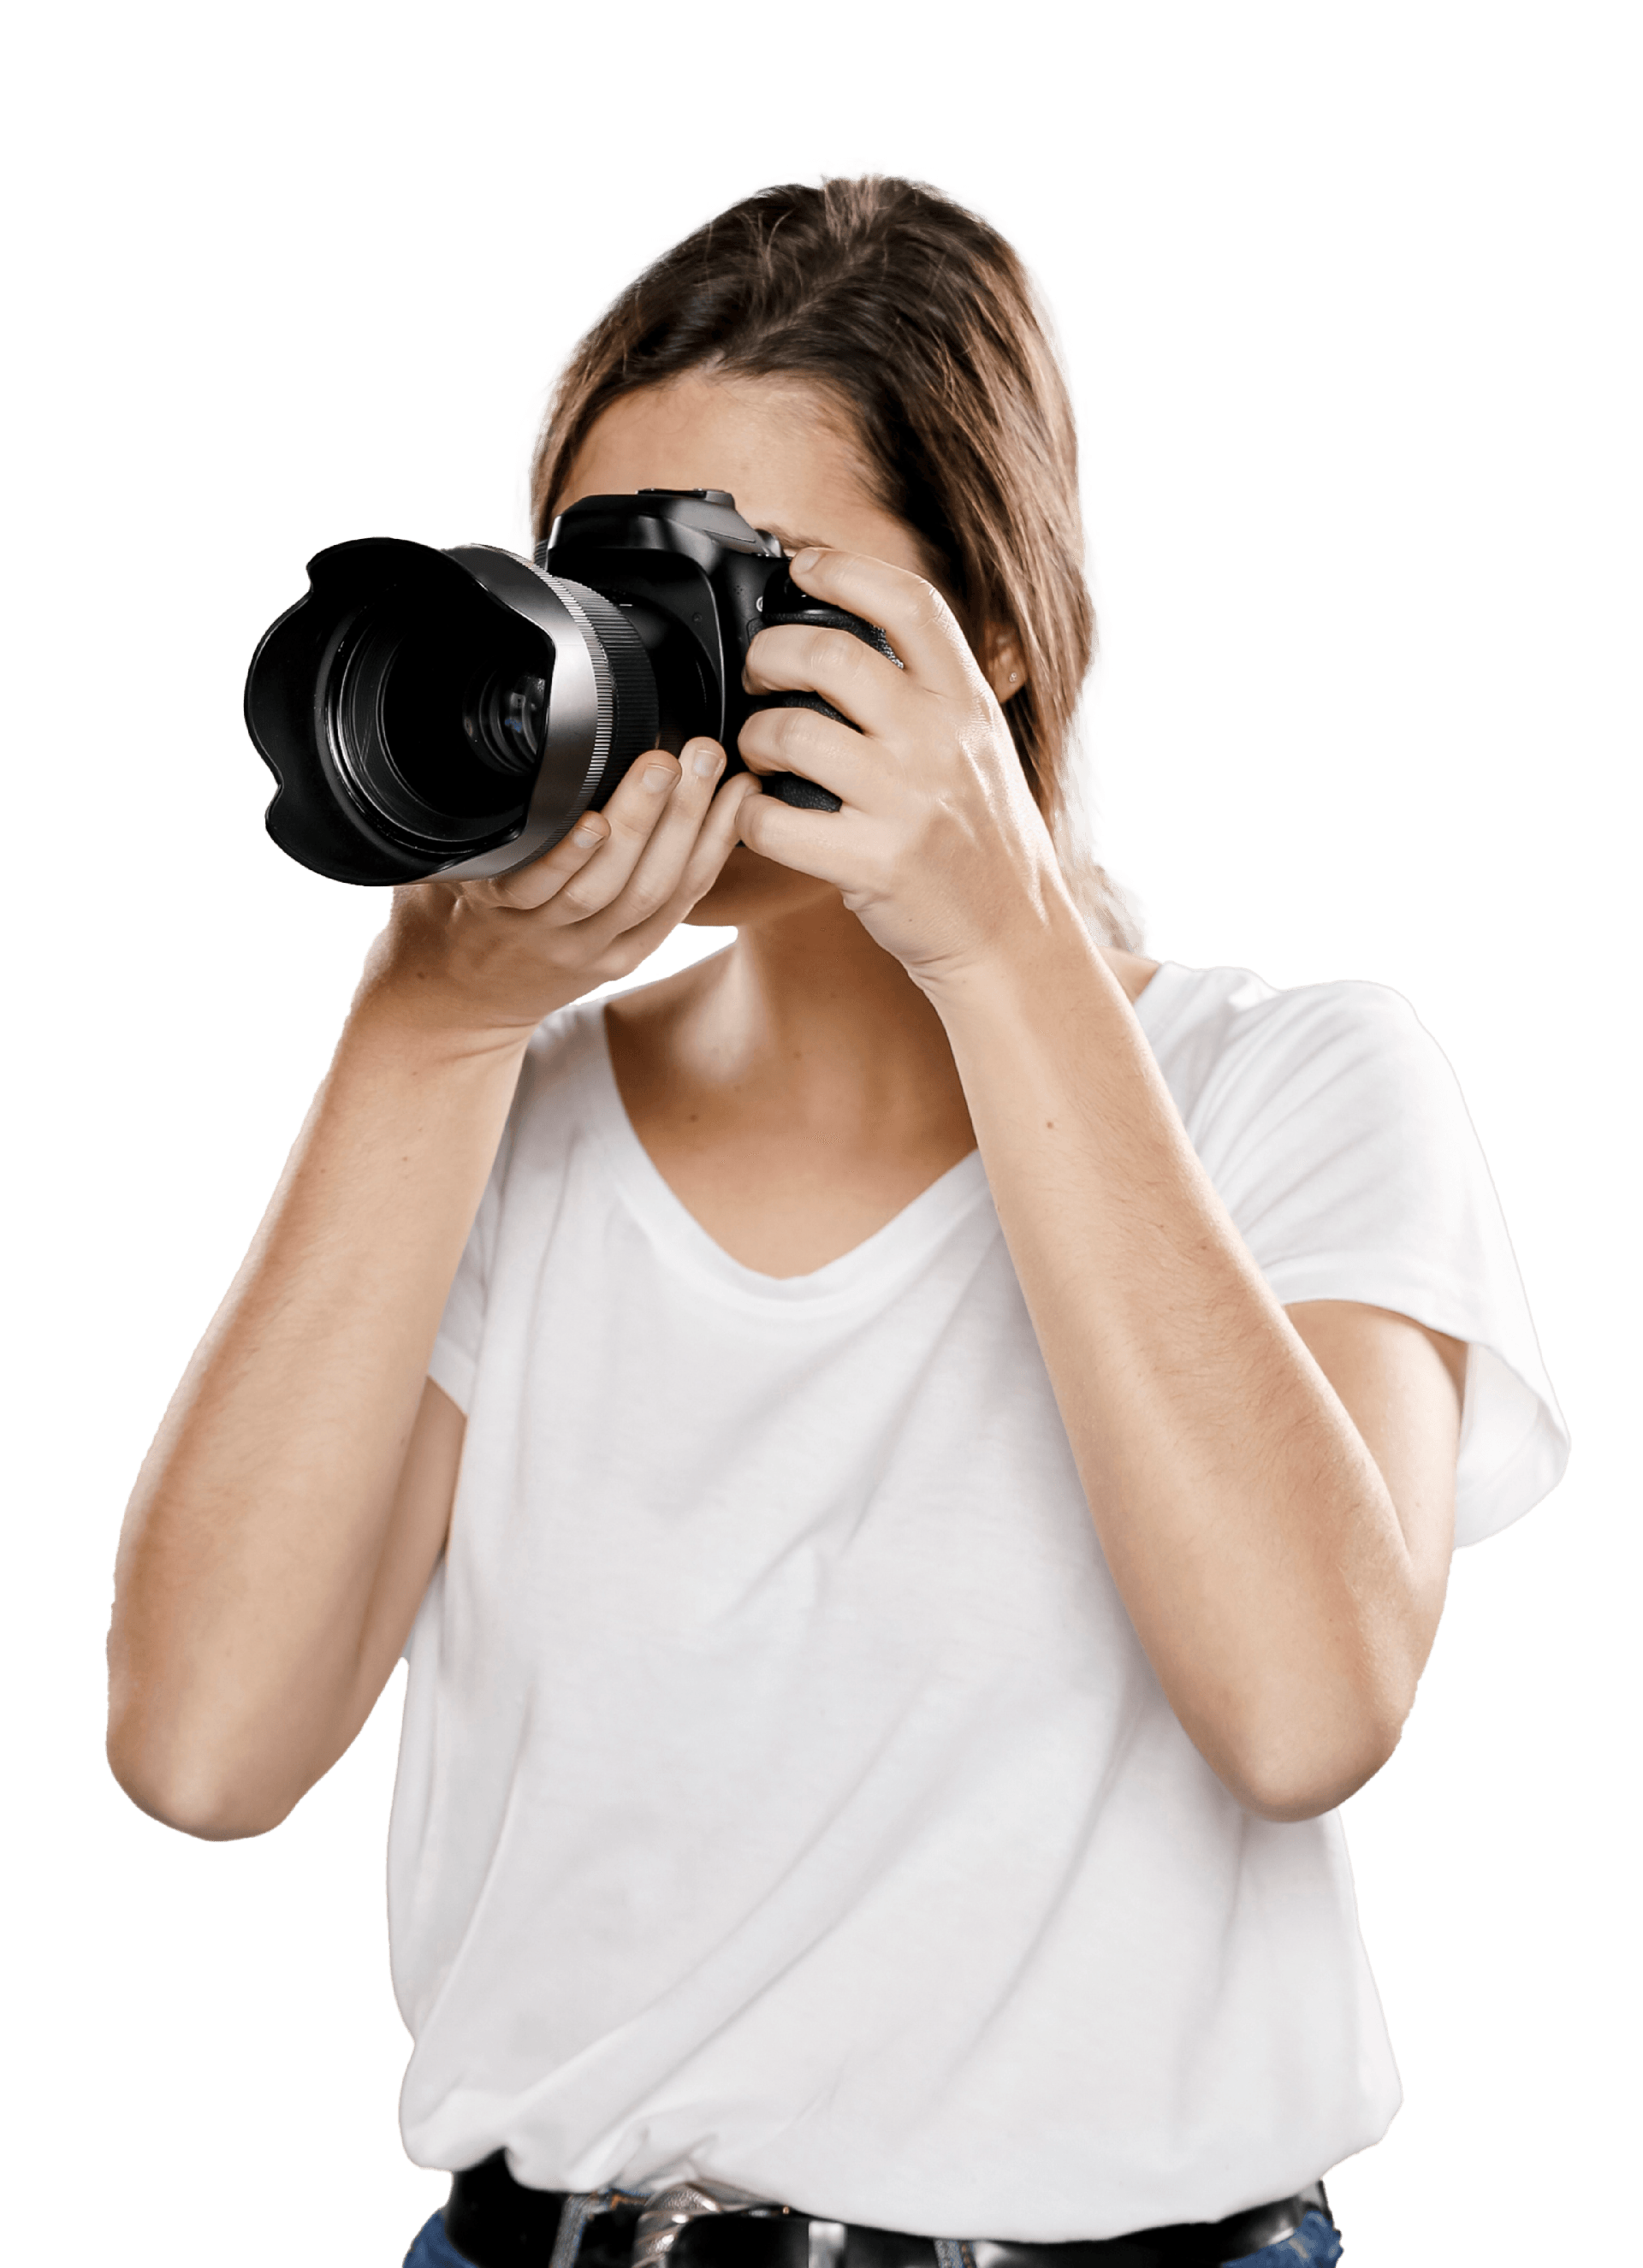 Una mujer está tomando una fotografía con una cámara.